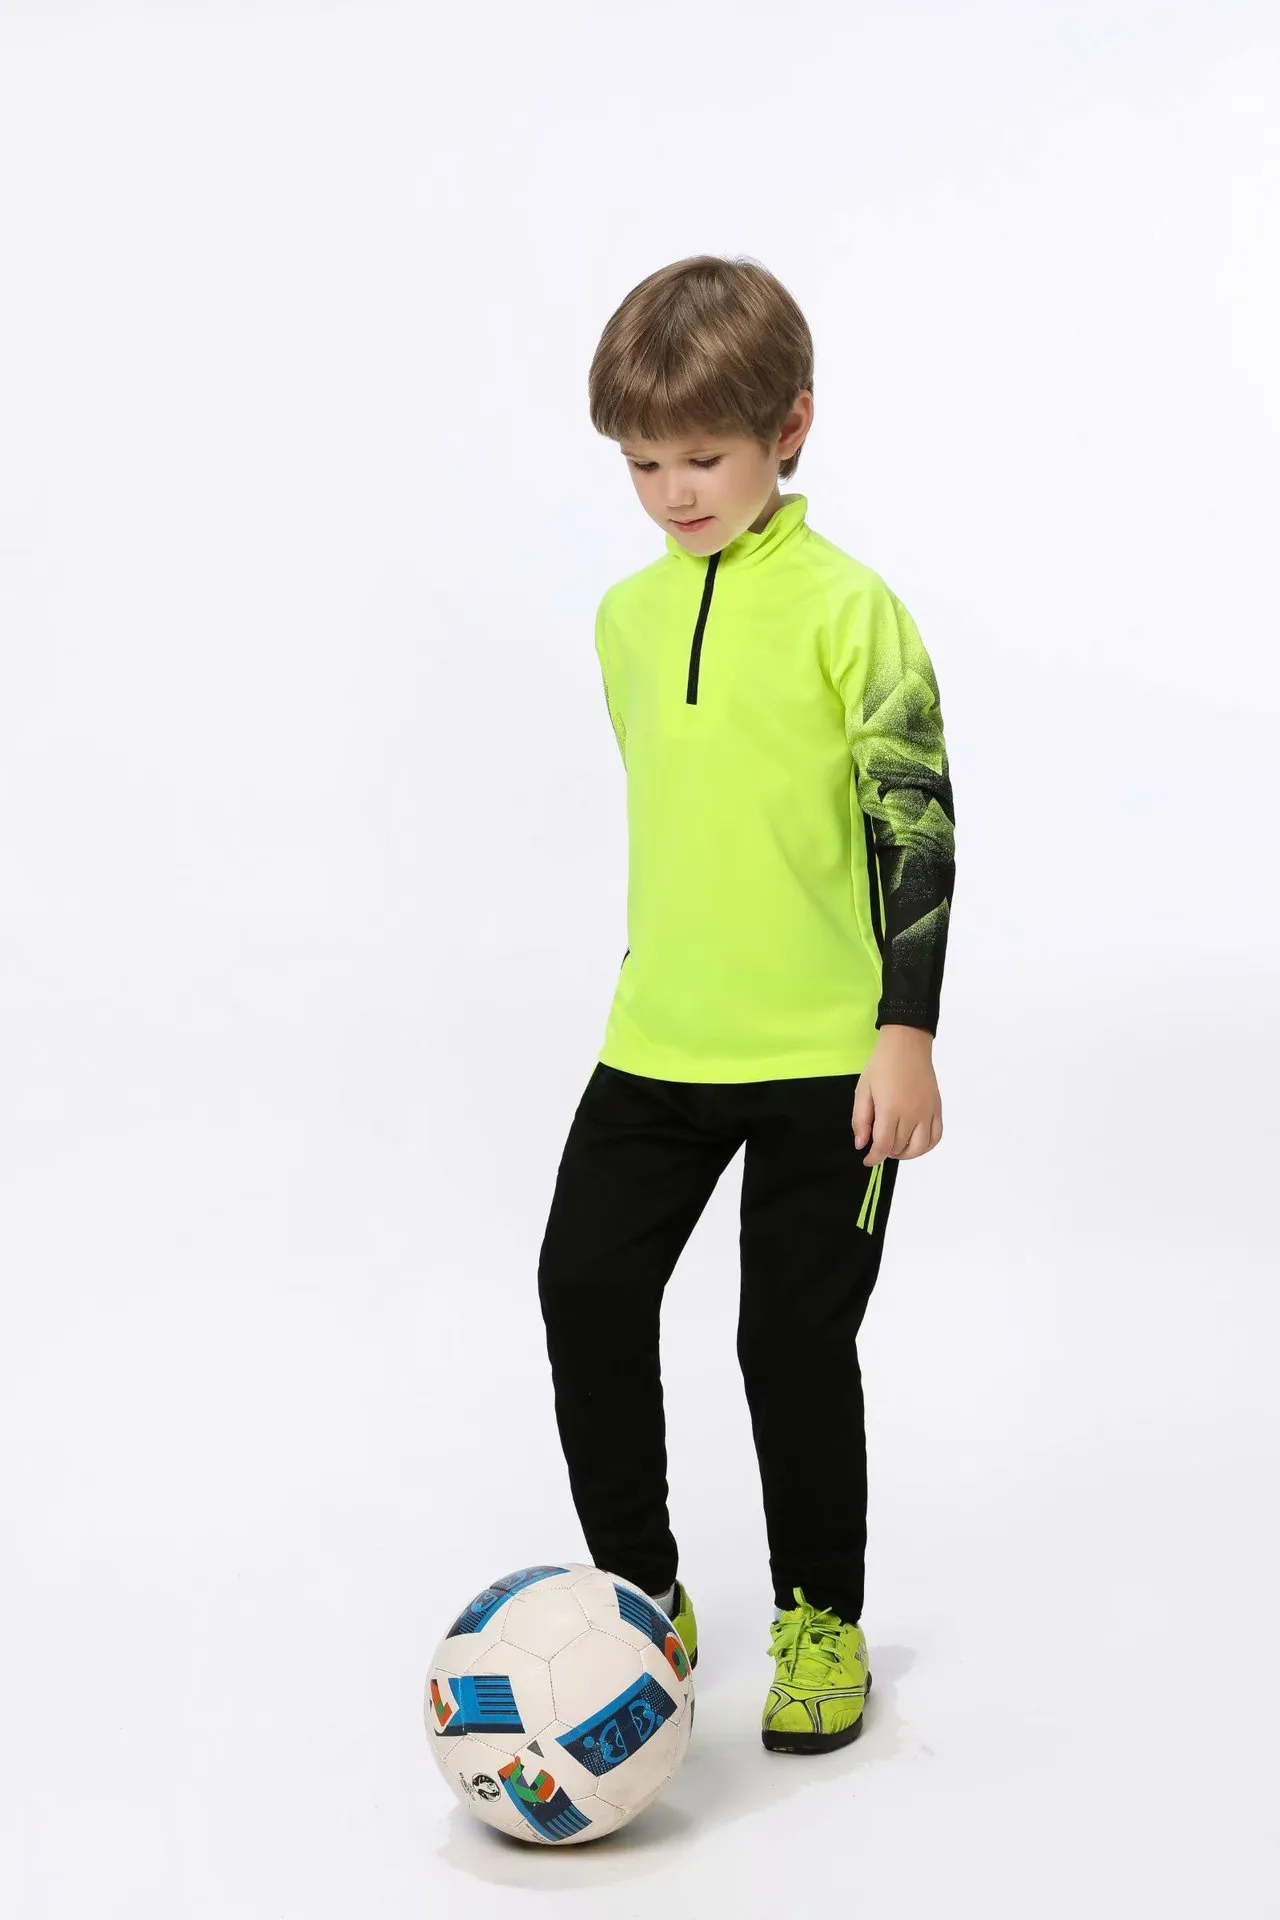 Jessie_kicks #HD61 Owens Design Moda Maglie Abbigliamento per bambini Ourtdoor Sport Supporto Immagini di controllo qualità prima della spedizione